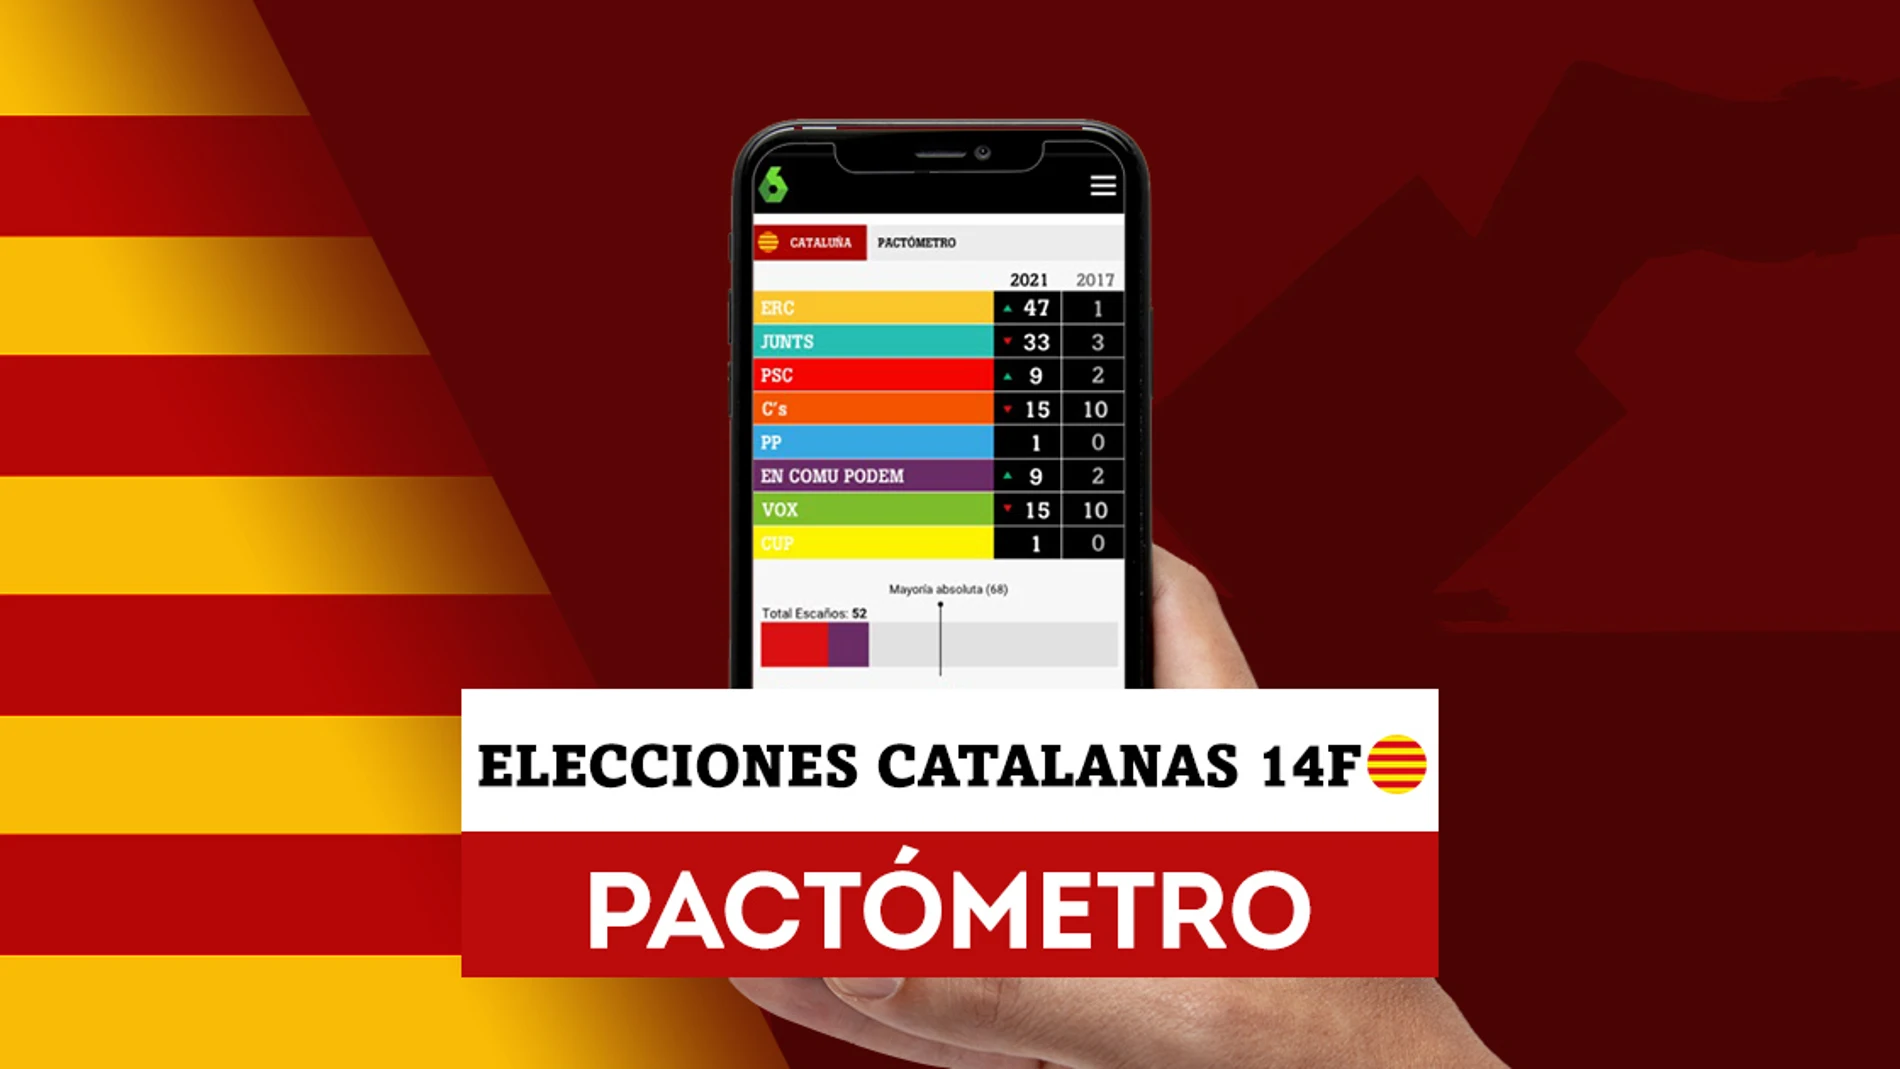 Consulta los resultados y pactos con el Pactómetro de las elecciones catalanas